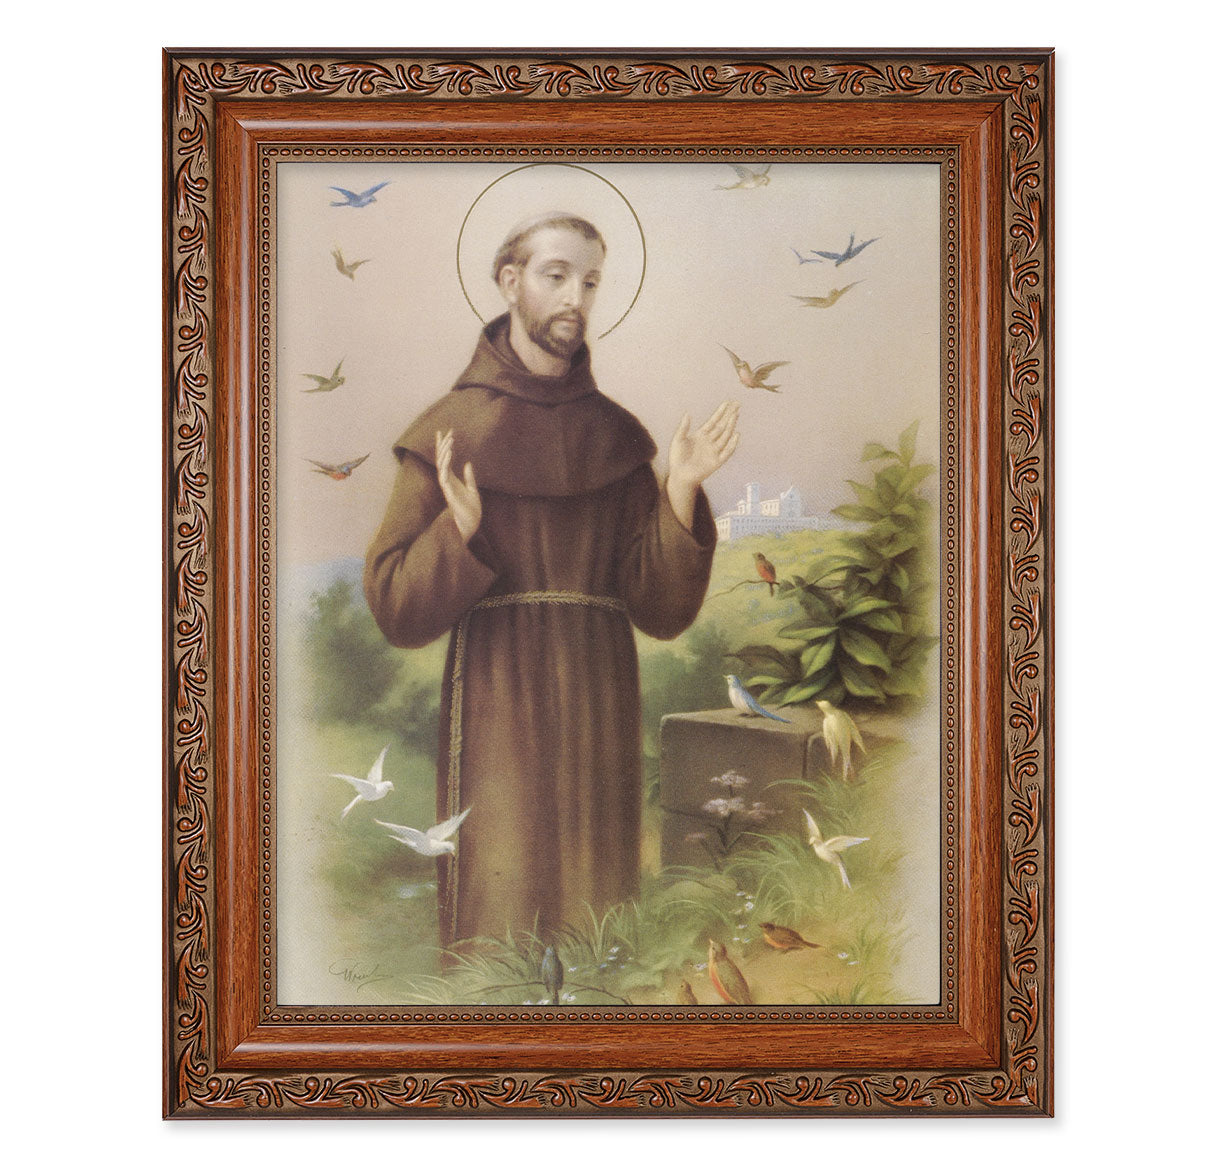 St. Francis Mahogany Finished Framed Art